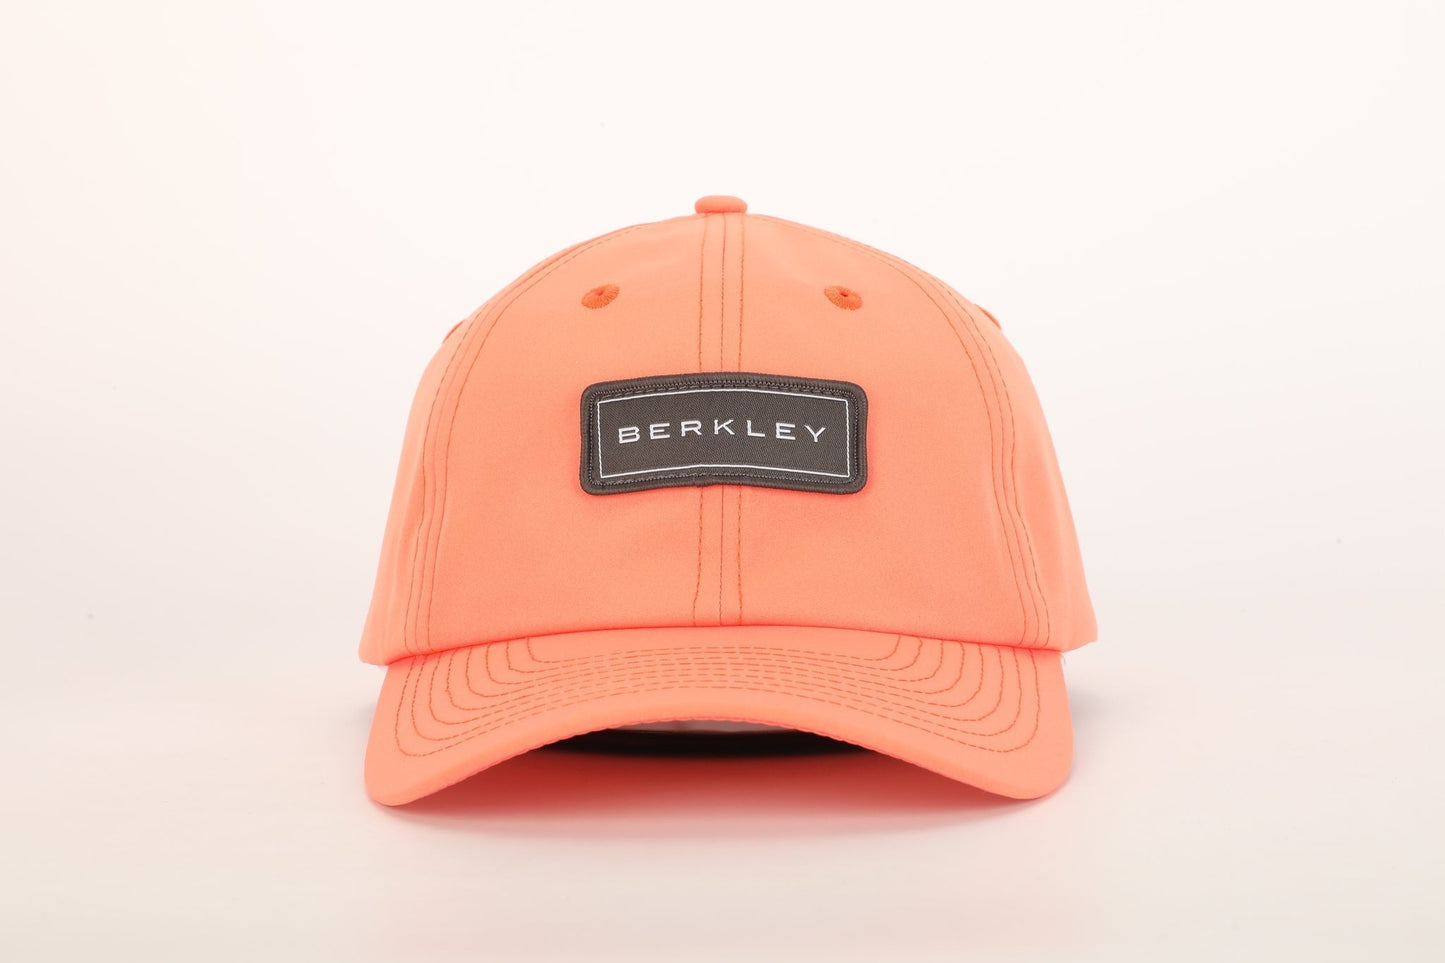 Berkley Golf - 'Berkley' Cap - Pastel Orange